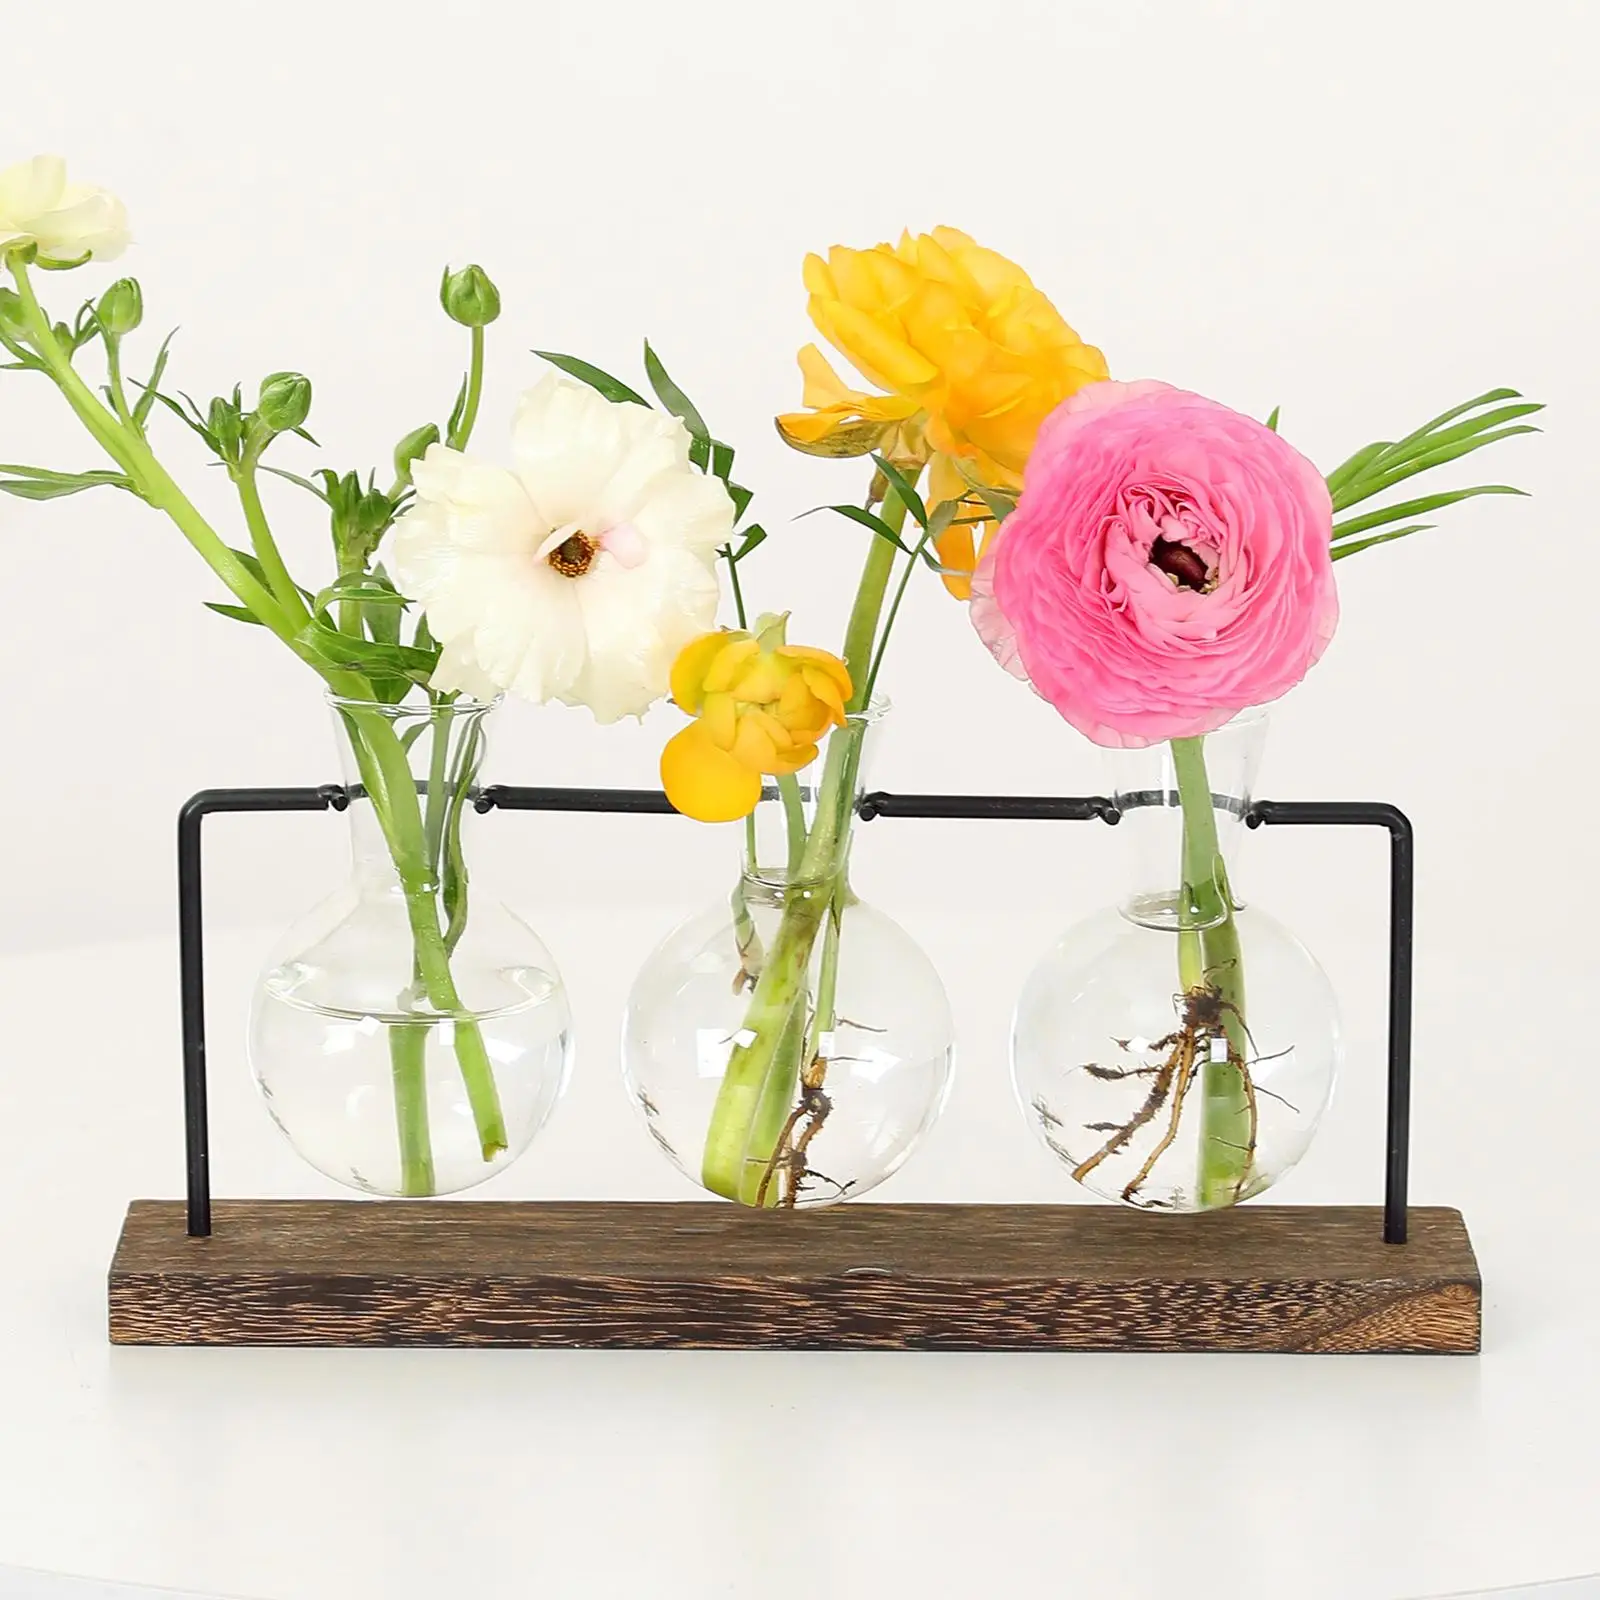 Creative Glass Bottle Hydroponic Plant Rack Transparent Vase Wooden Decor